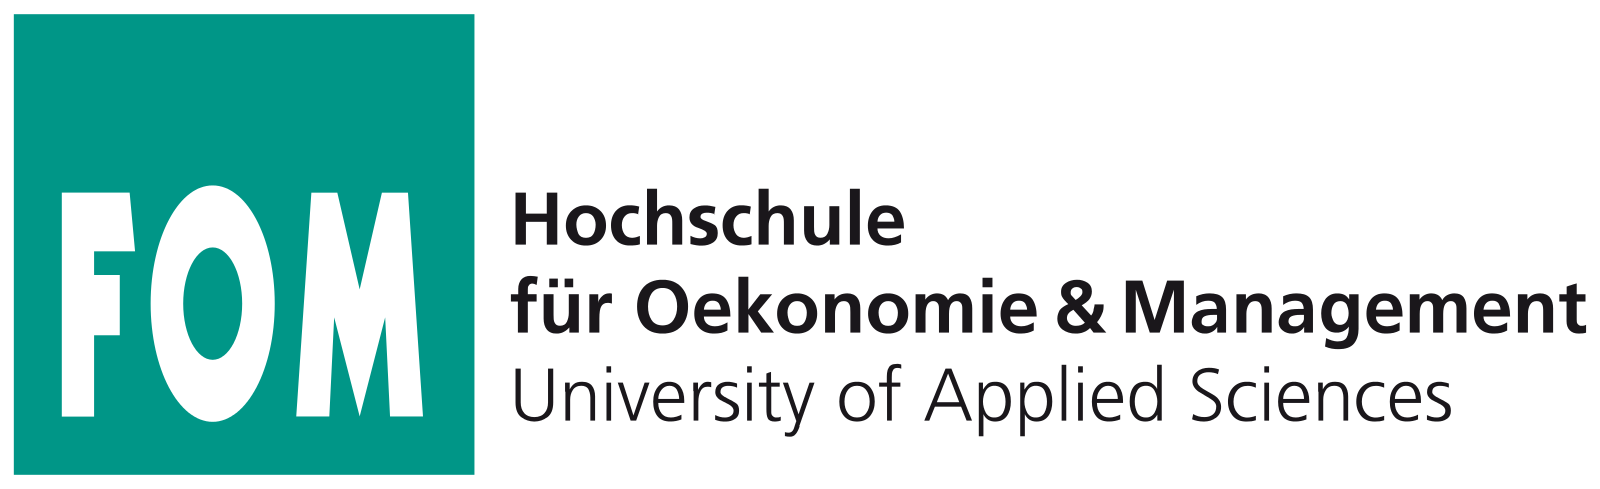 Hochschule_für_Oekonomie_&_Management_logo.svg